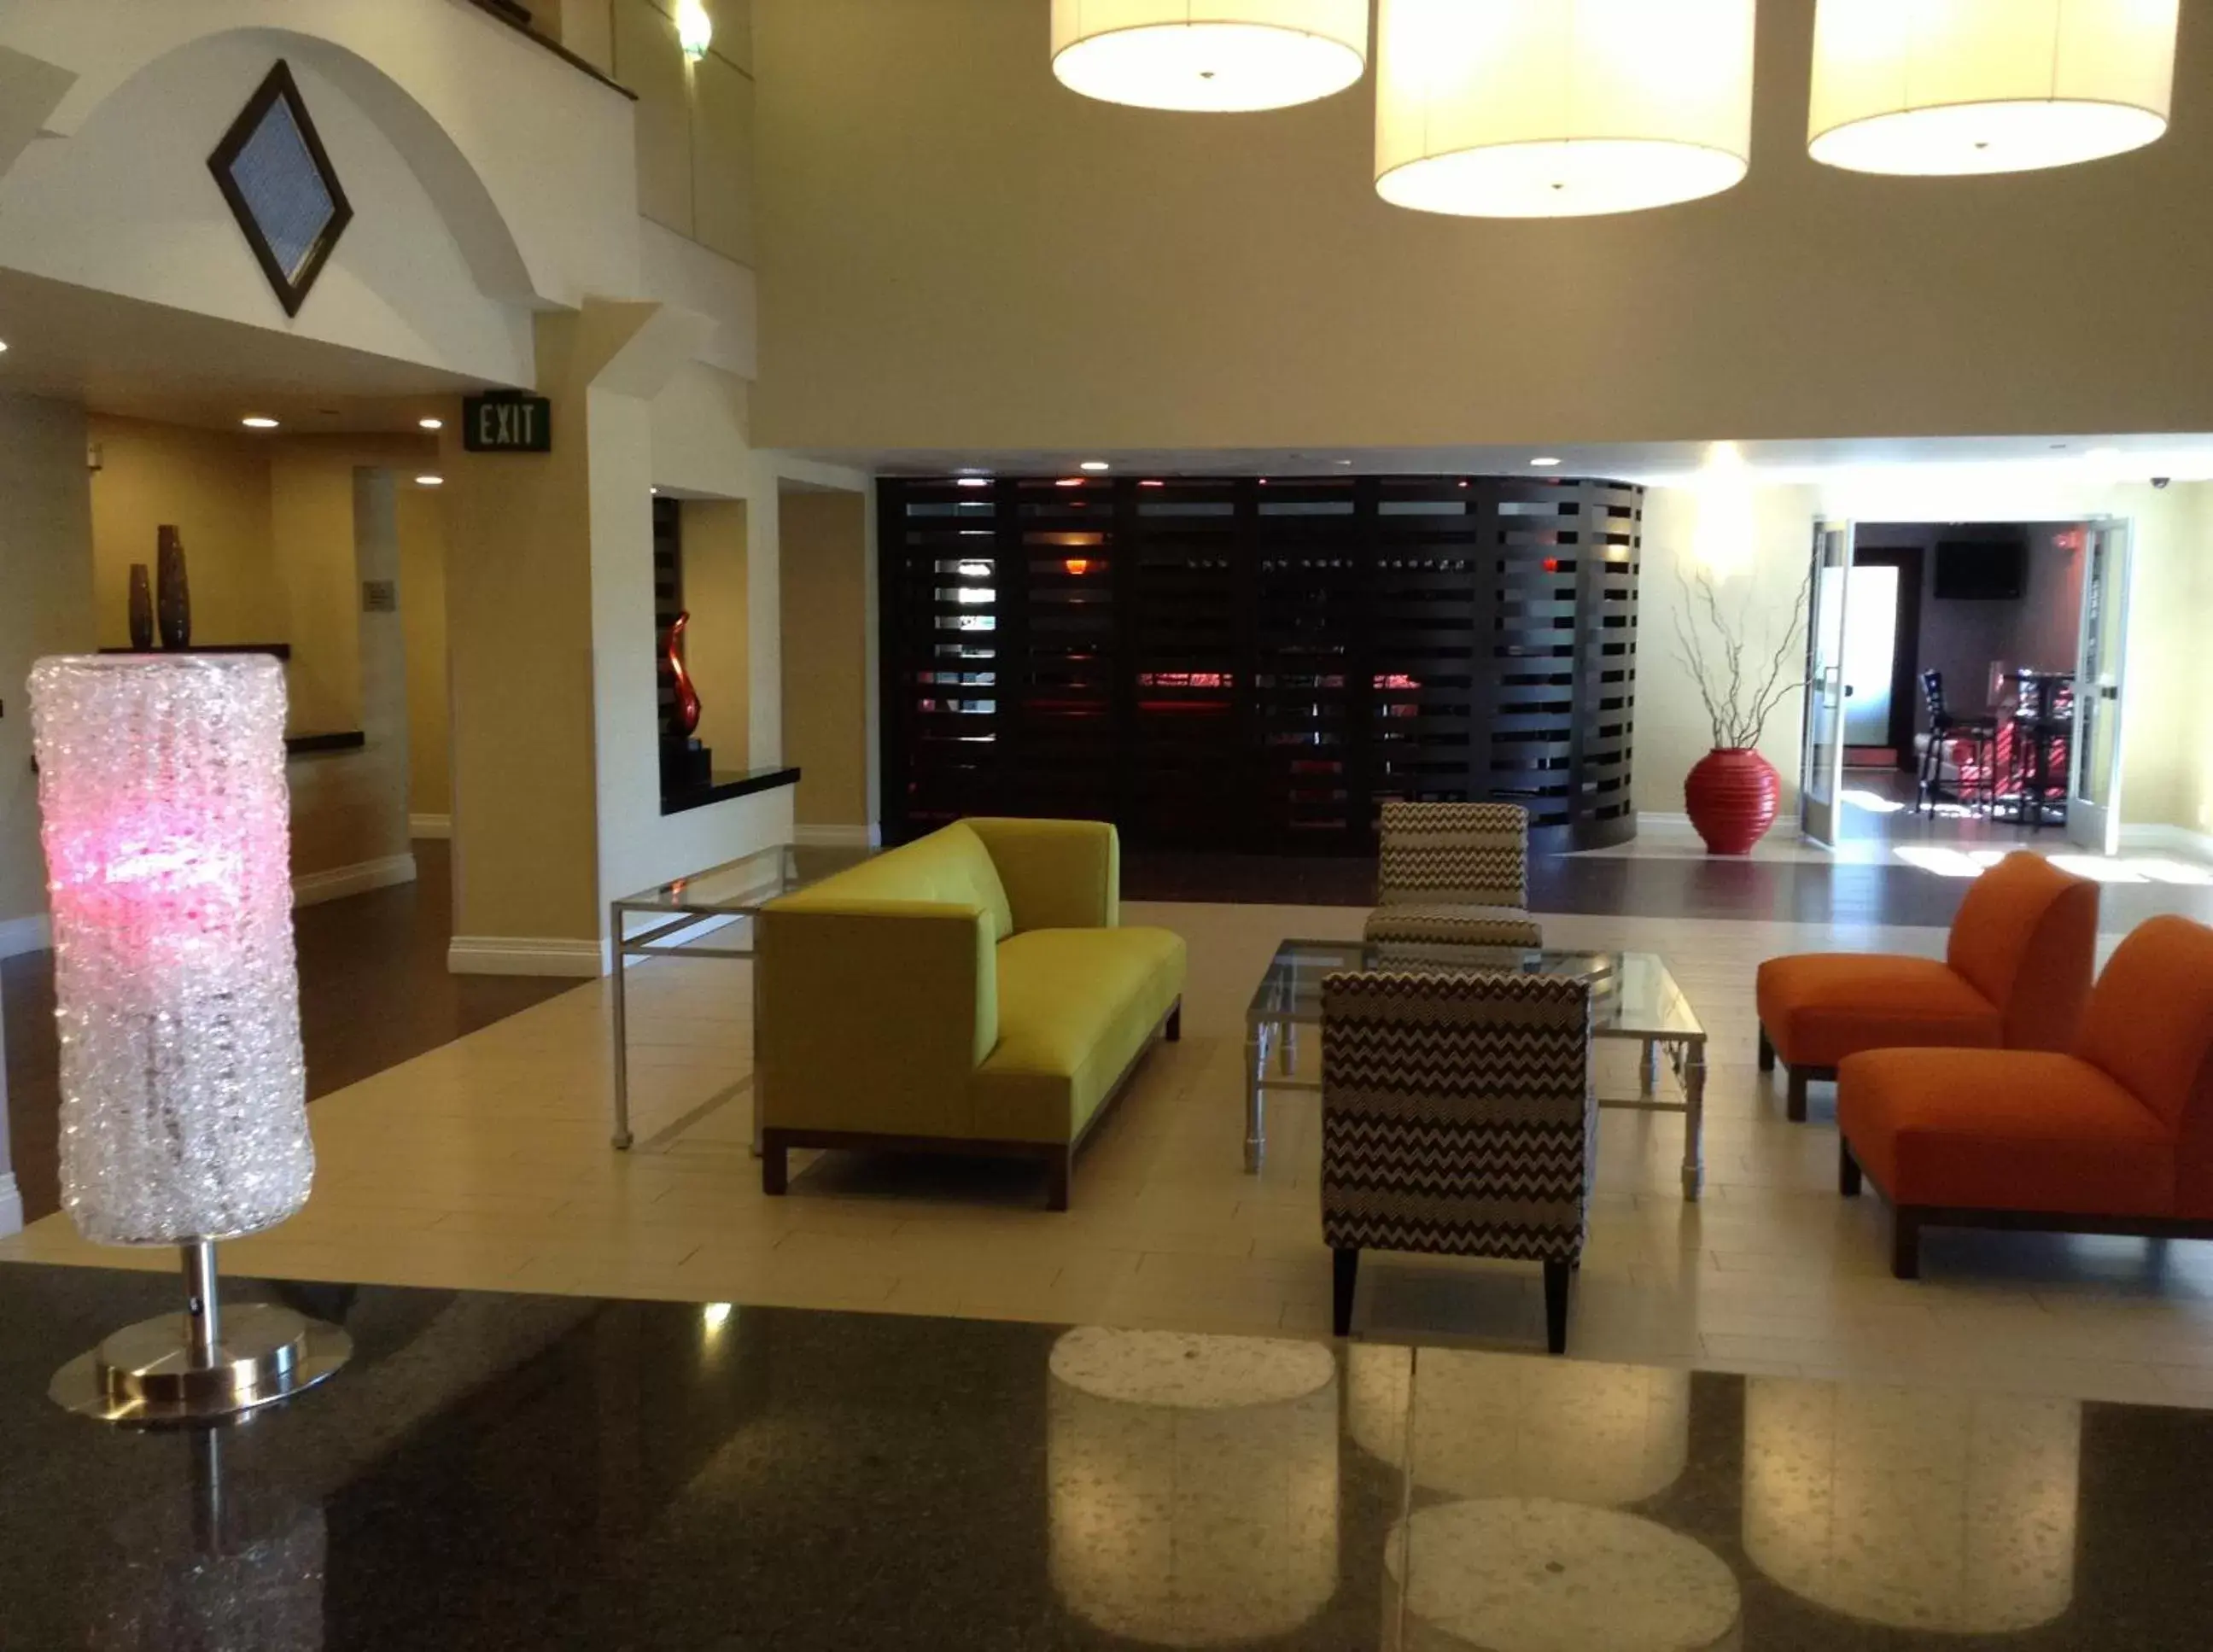 Lobby or reception, Lobby/Reception in Radisson Hotel Chatsworth